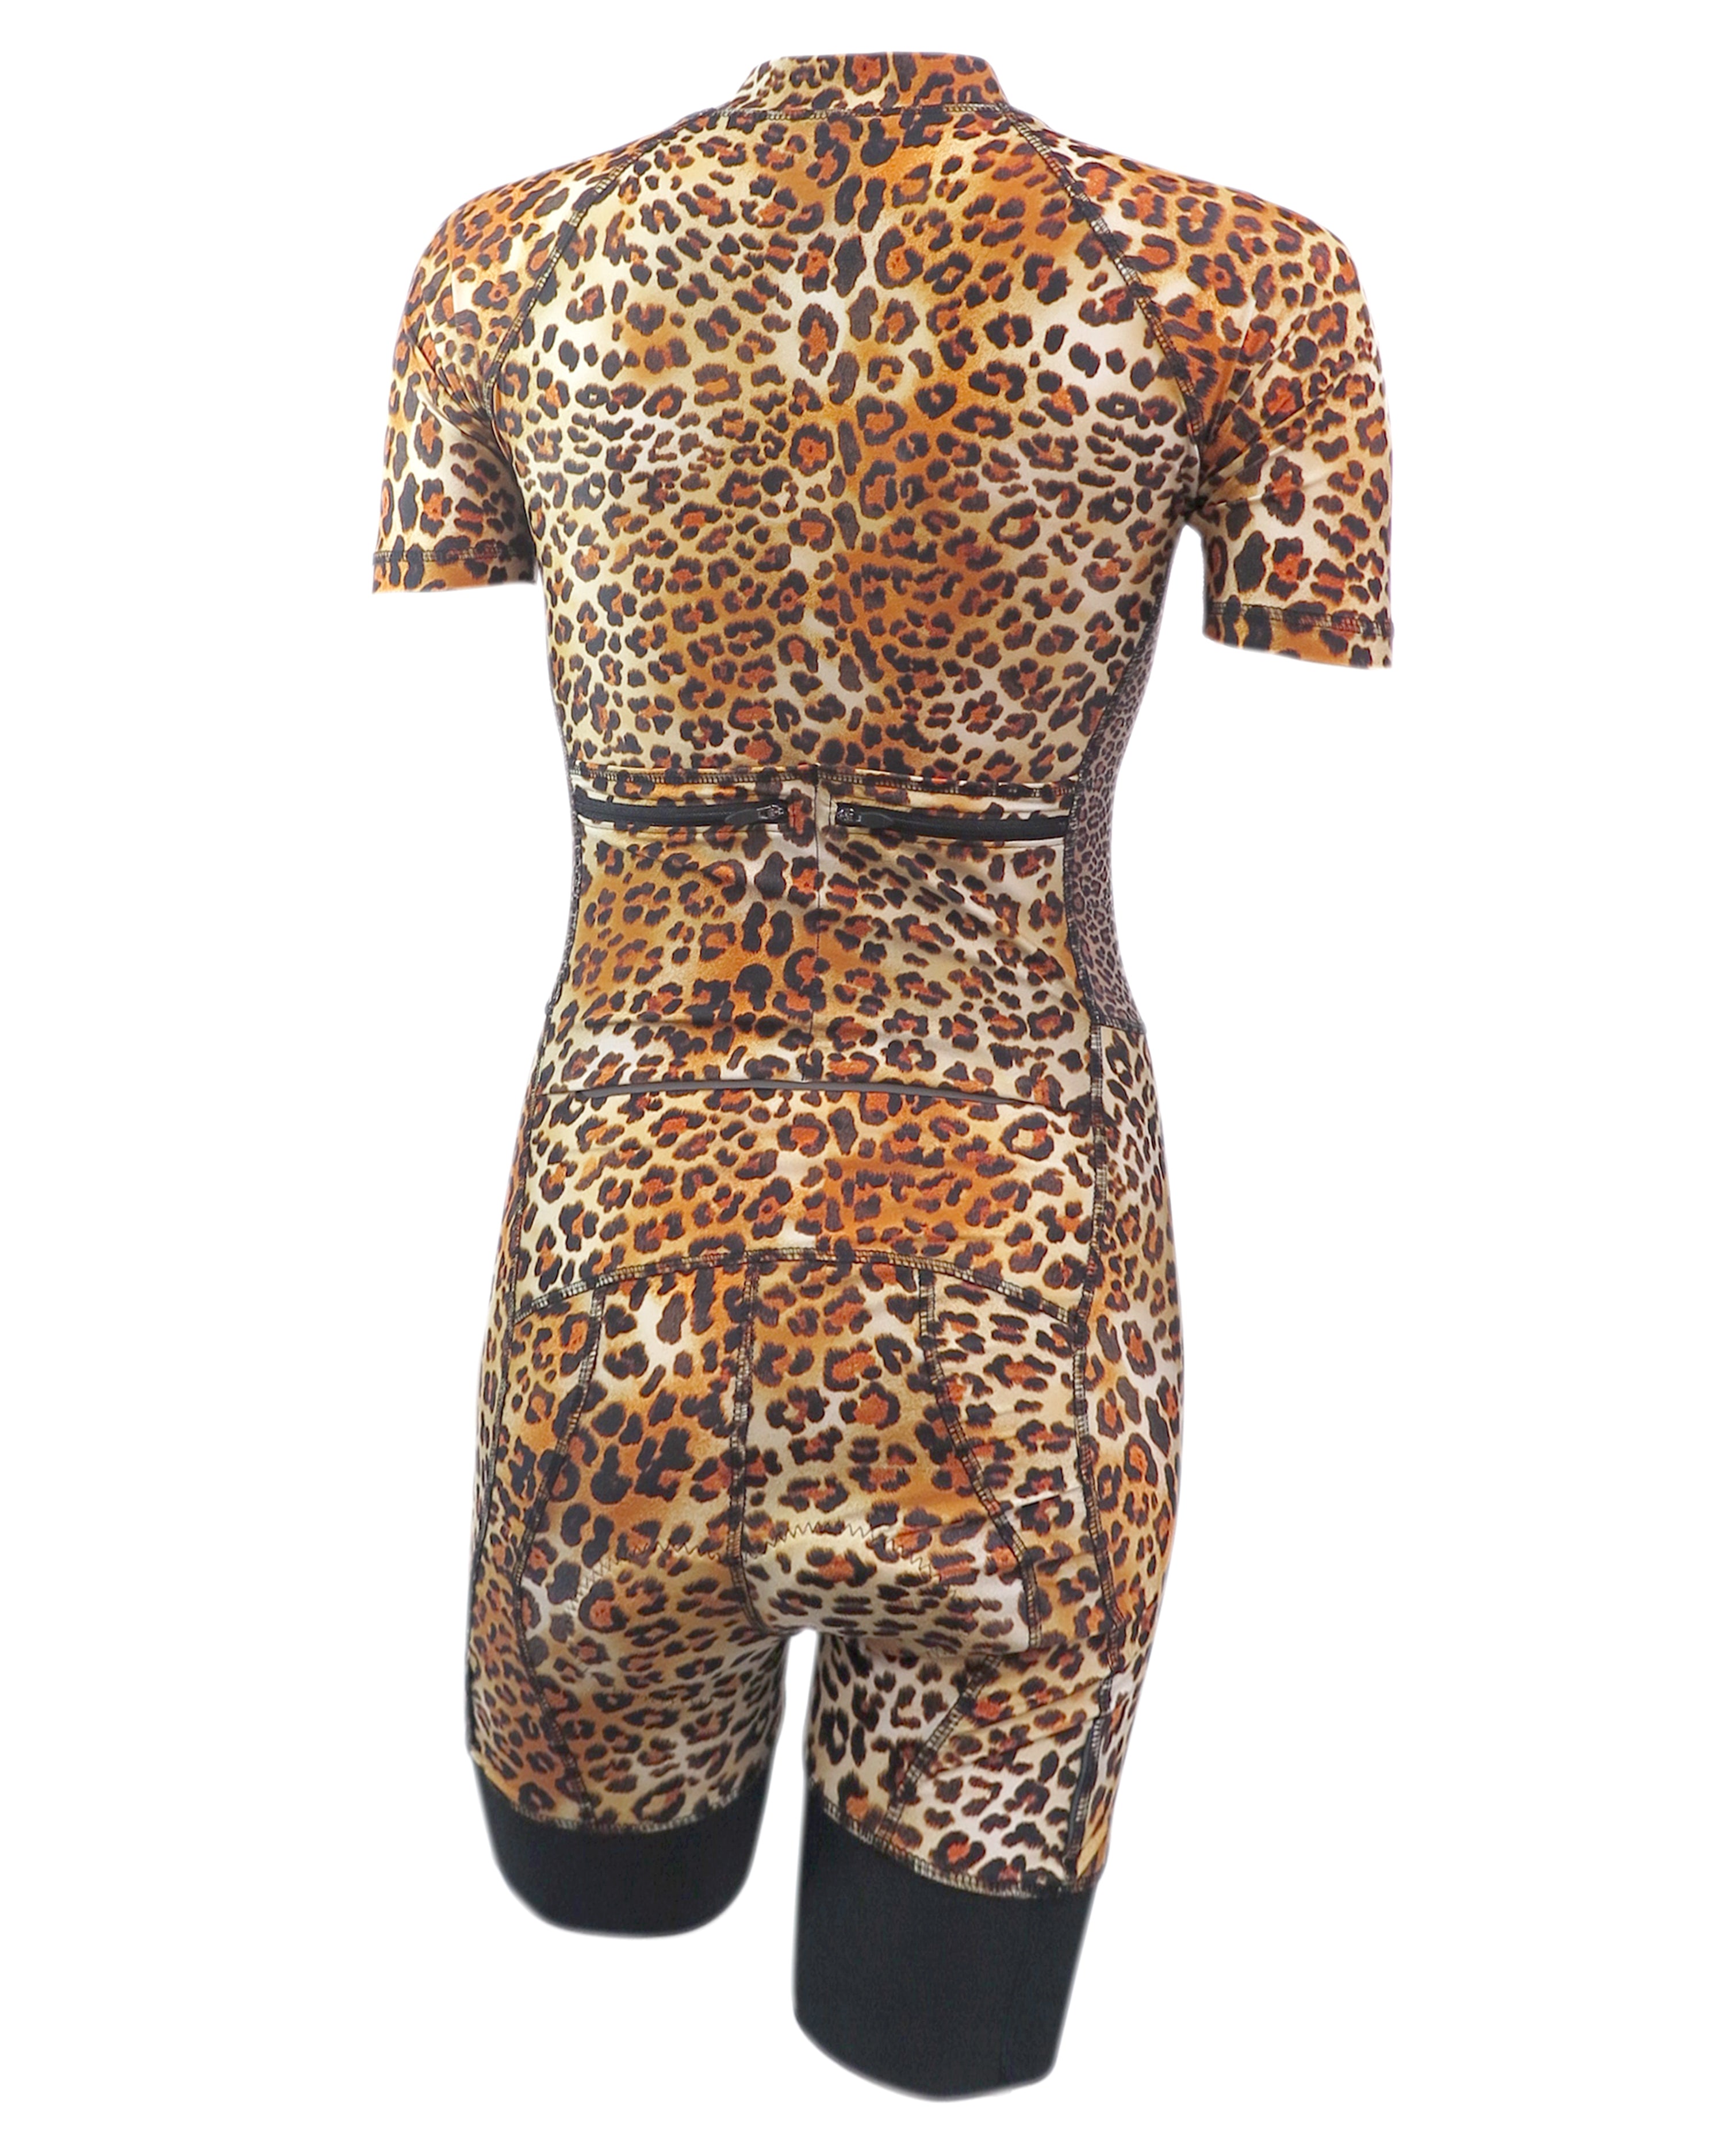 Sunzel Womens Leopard Print Bike Shirts Medium M Pocket 4” inseam